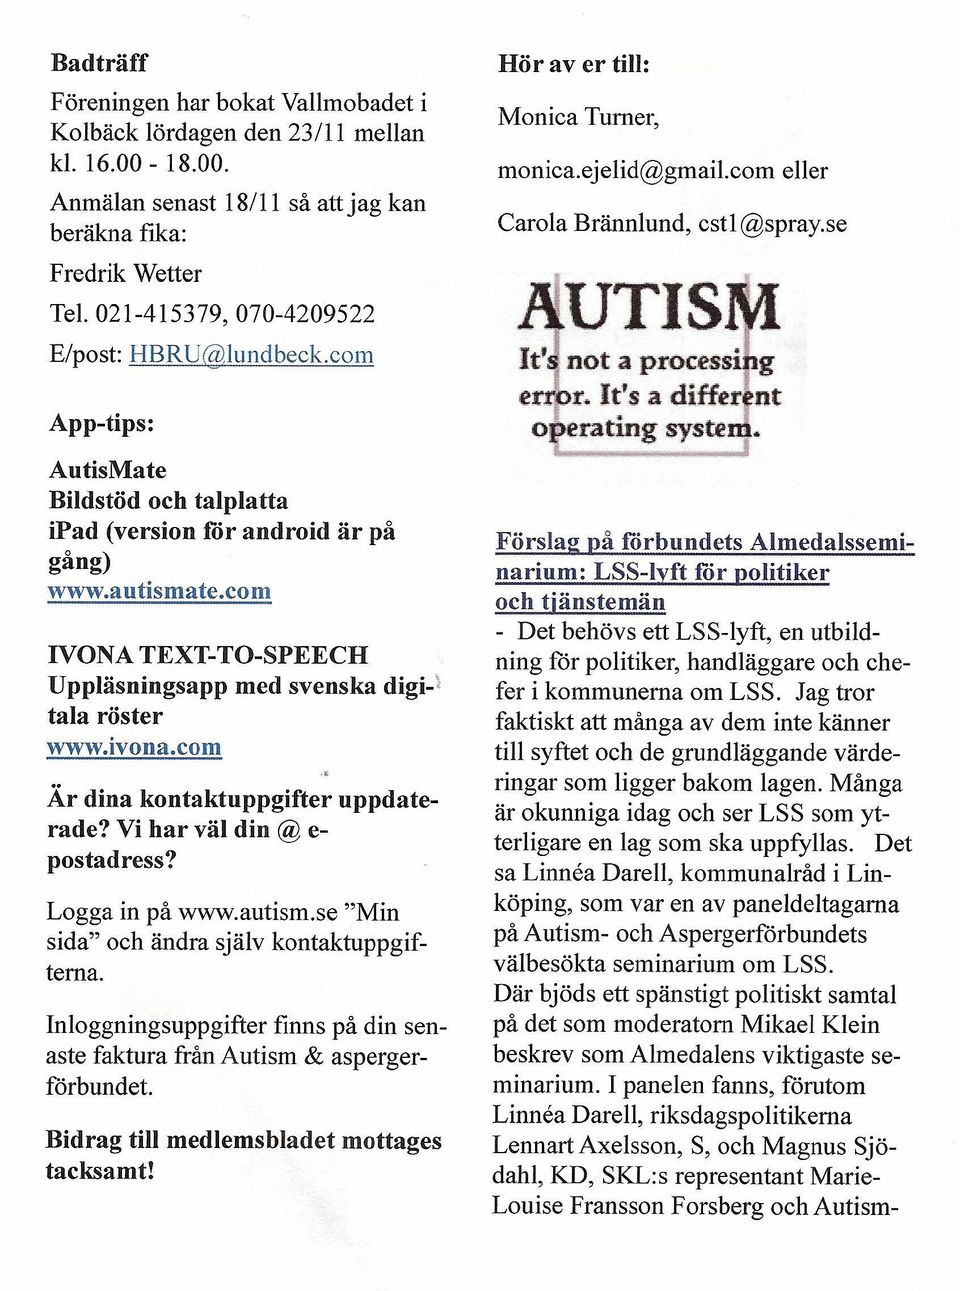 com IVONA TEXT- TO-SPEECH Uppläsningsapp med svenska digp tala röster www.ivona.com Är dina kontaktuppgifter uppdaterade? Vi har väl din @ e- postadress? Logga in på www.autism.